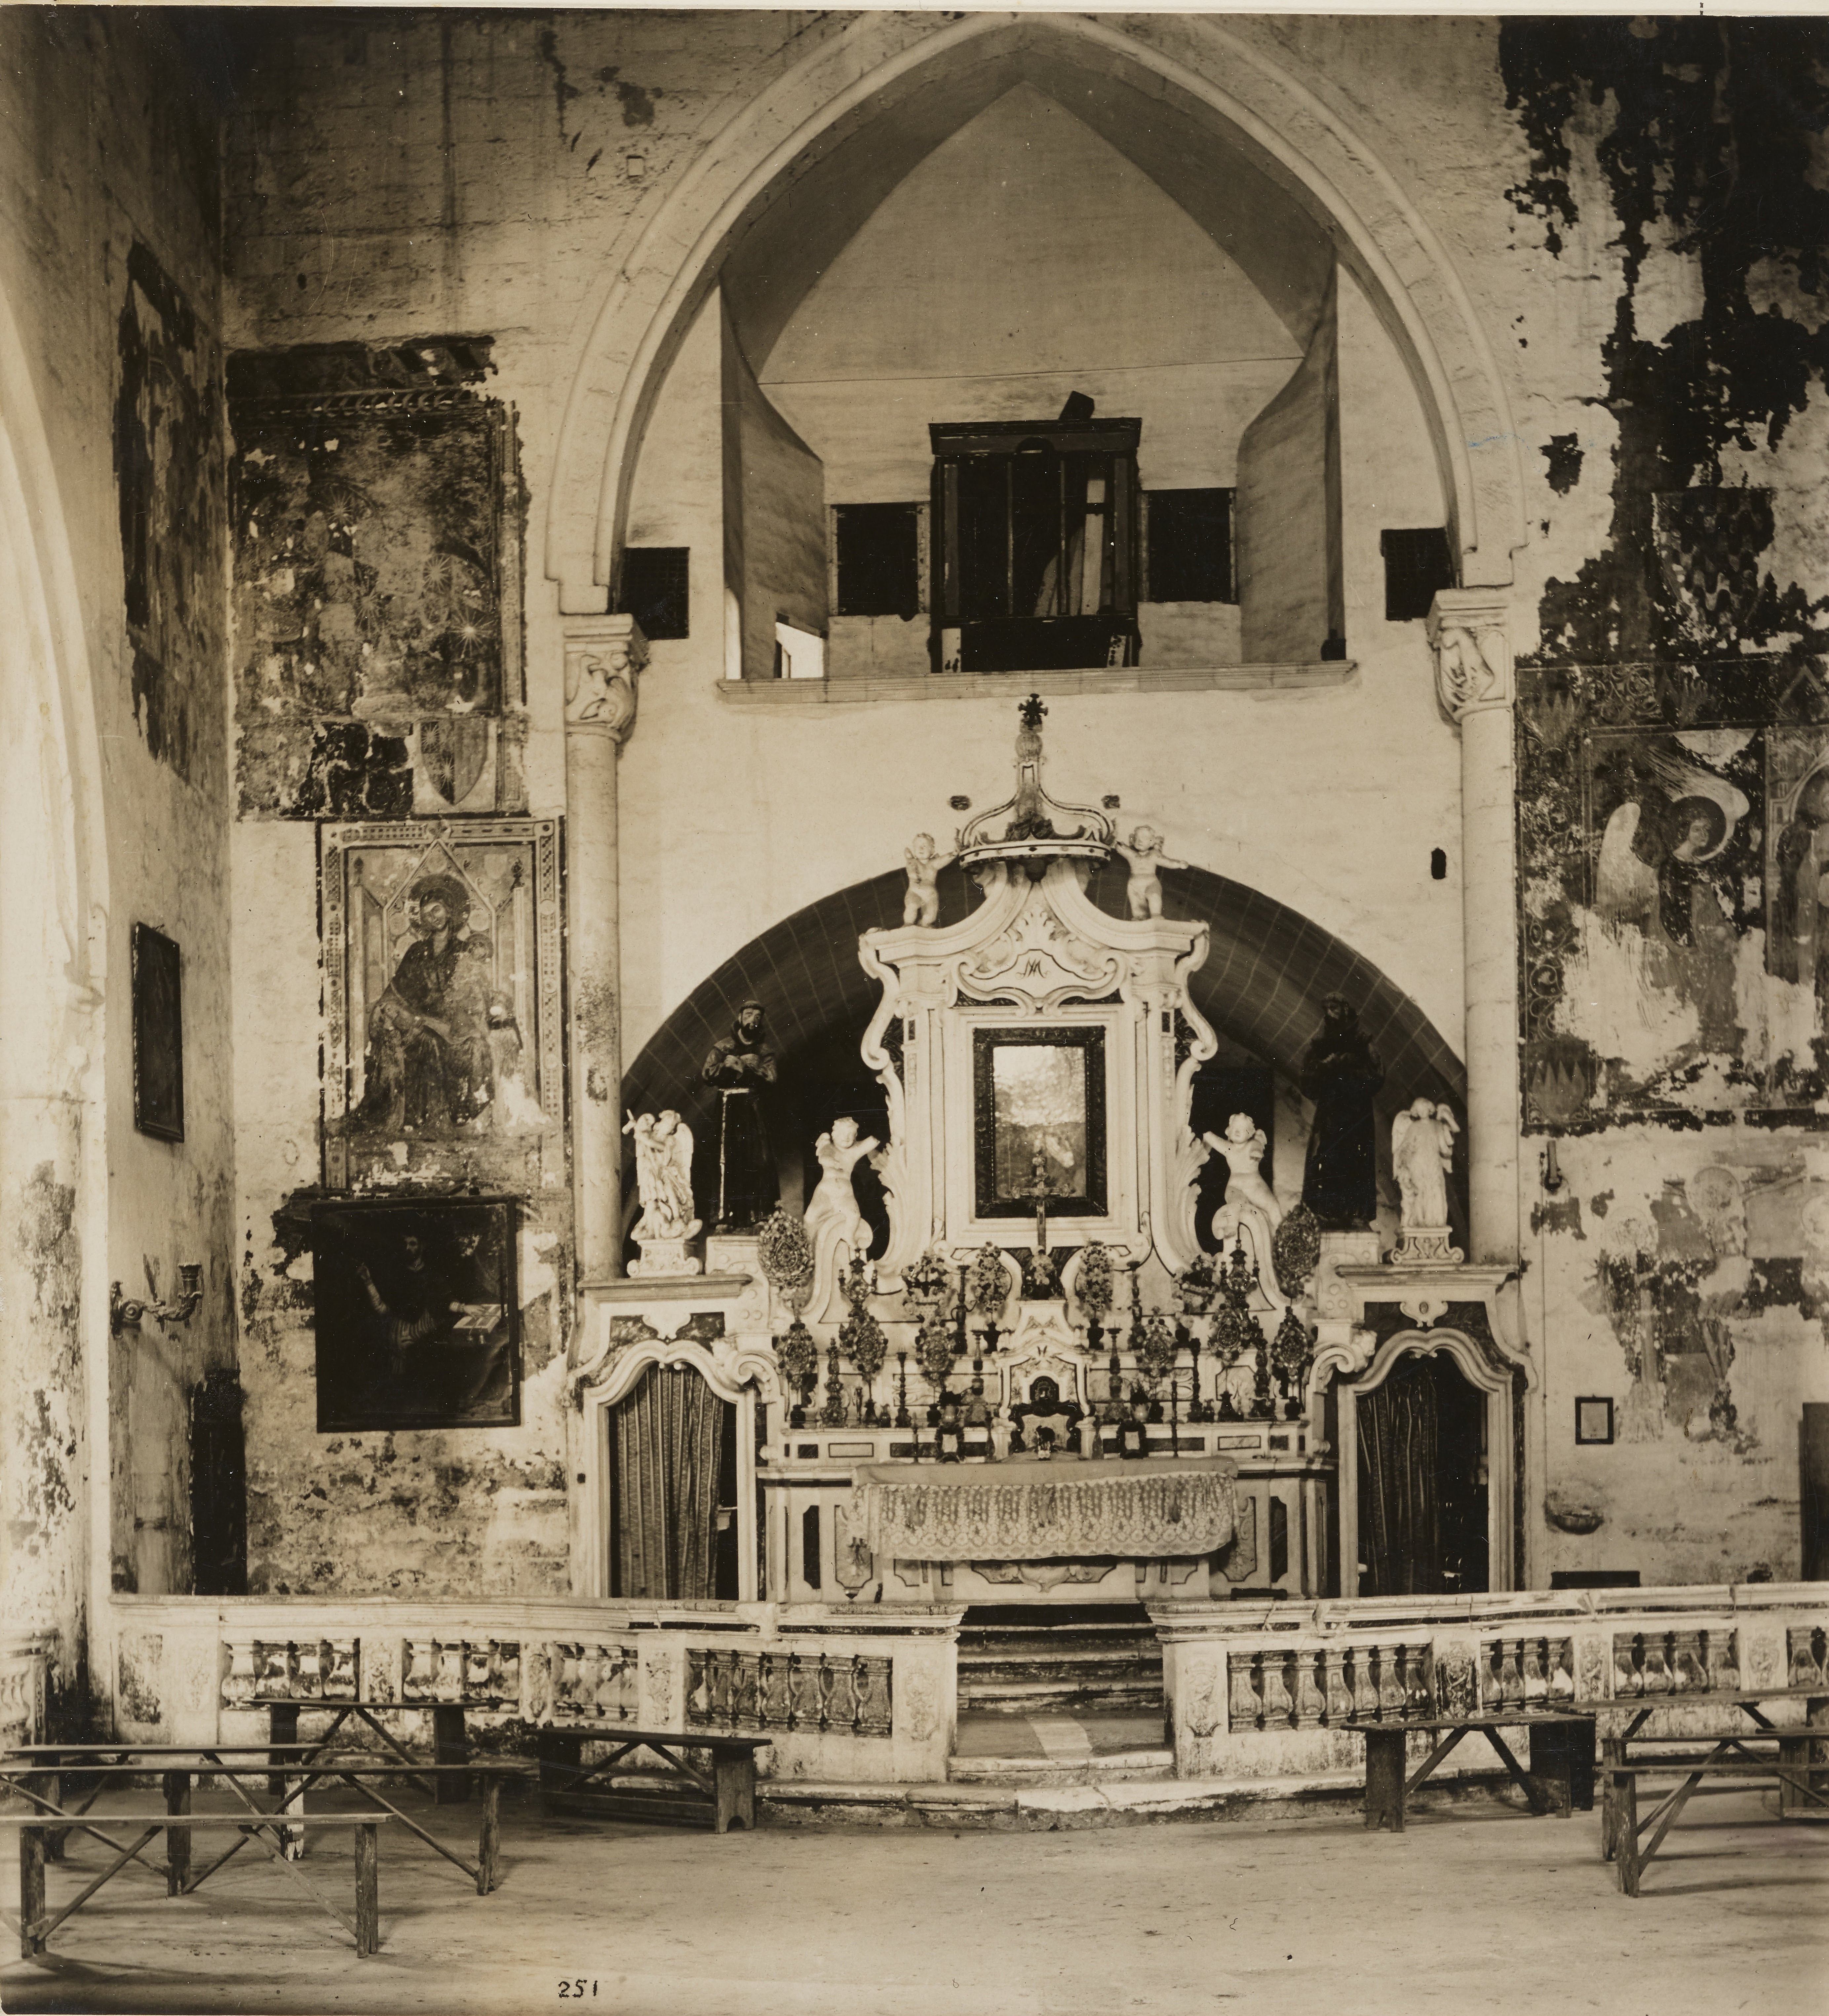 Fotografo non identificato, Brindisi - Chiesa di S. Maria del Casale, interno con altare maggiore, 1901-1925, gelatina ai sali d'argento, MPI141596